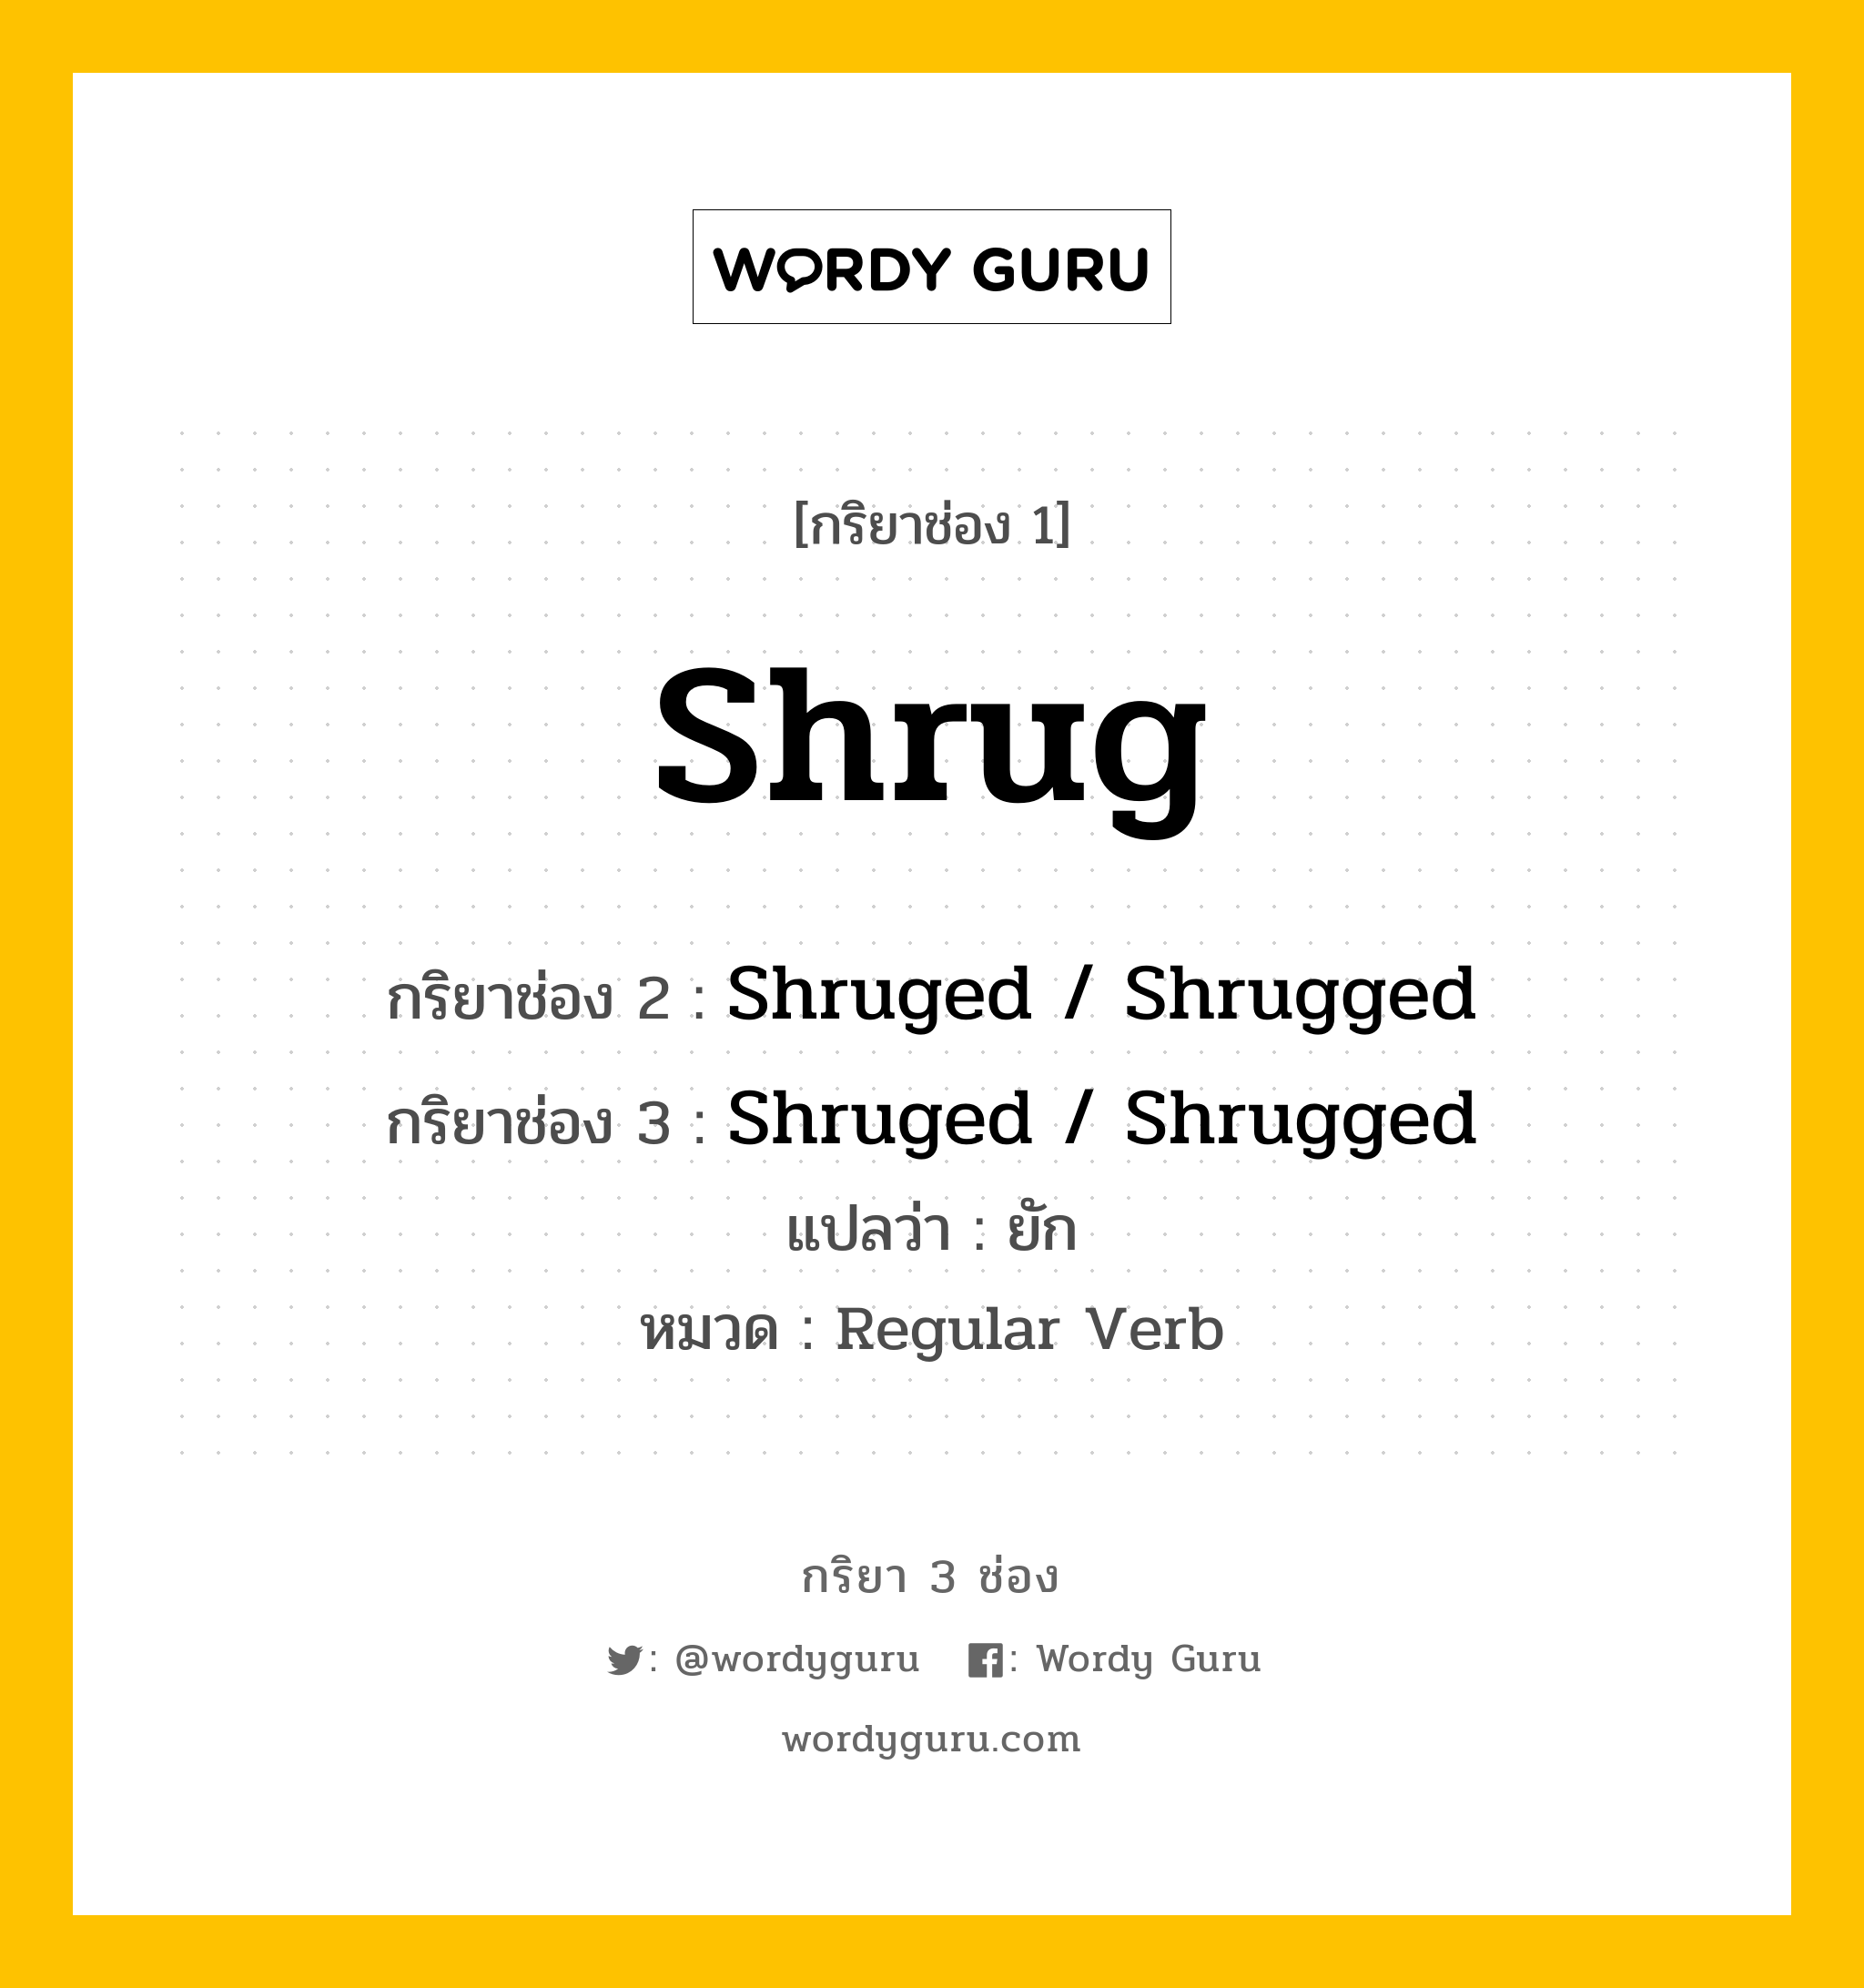 กริยา 3 ช่อง ของ Shrug คืออะไร? มาดูคำอ่าน คำแปลกันเลย, กริยาช่อง 1 Shrug กริยาช่อง 2 Shruged / Shrugged กริยาช่อง 3 Shruged / Shrugged แปลว่า ยัก หมวด Regular Verb หมวด Regular Verb